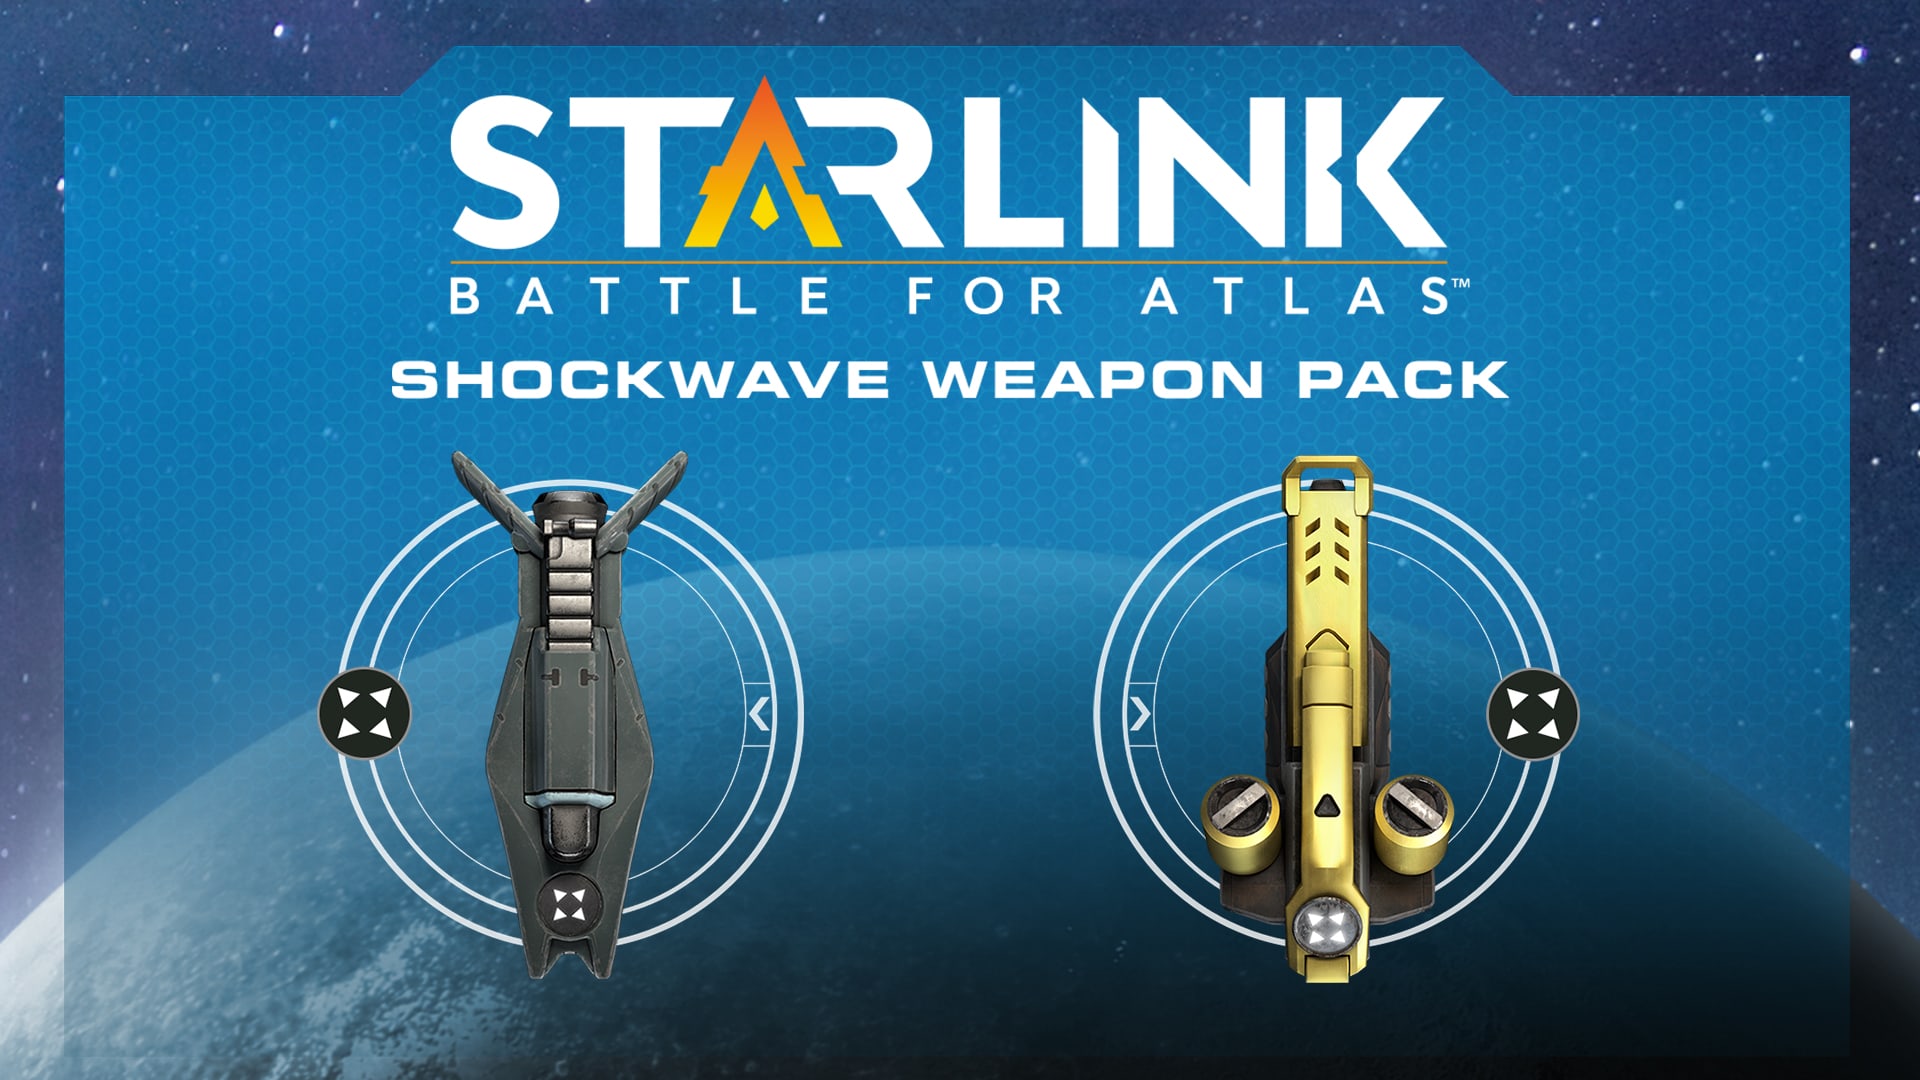 Starlink: Battle for Atlas™ Digital Shockwave Weapon Pack